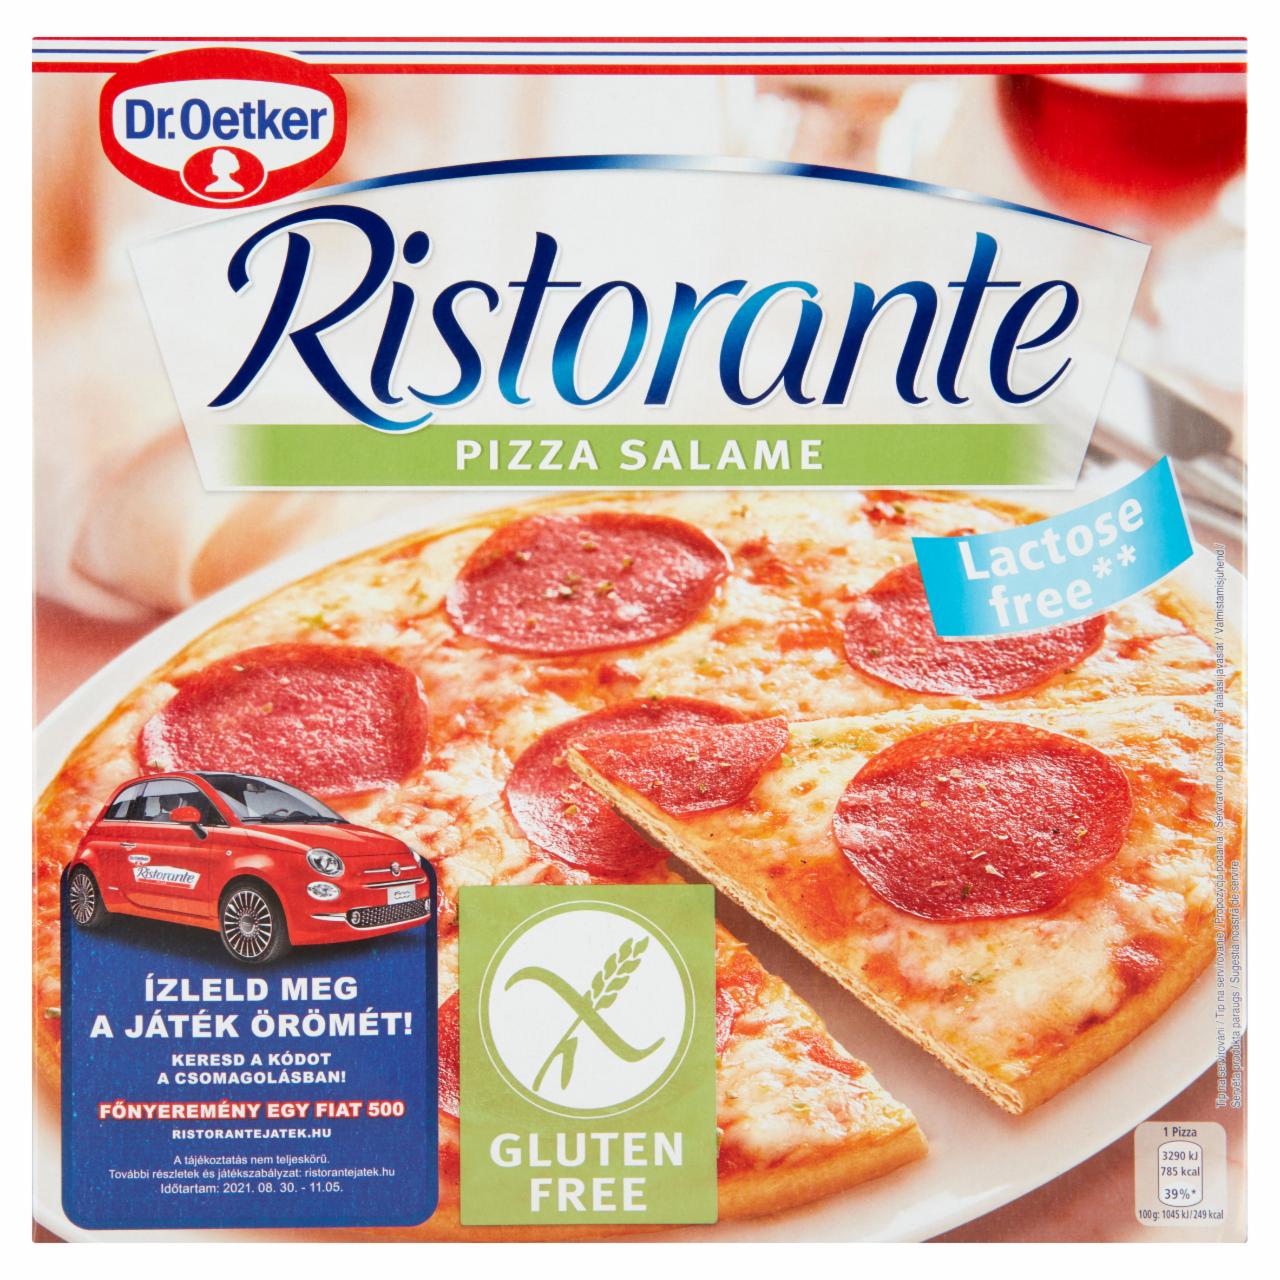 Képek - Dr. Oetker Ristorante Pizza Salame gyorsfagyasztott gluténmentes pizza sajttal és szalámival 315 g